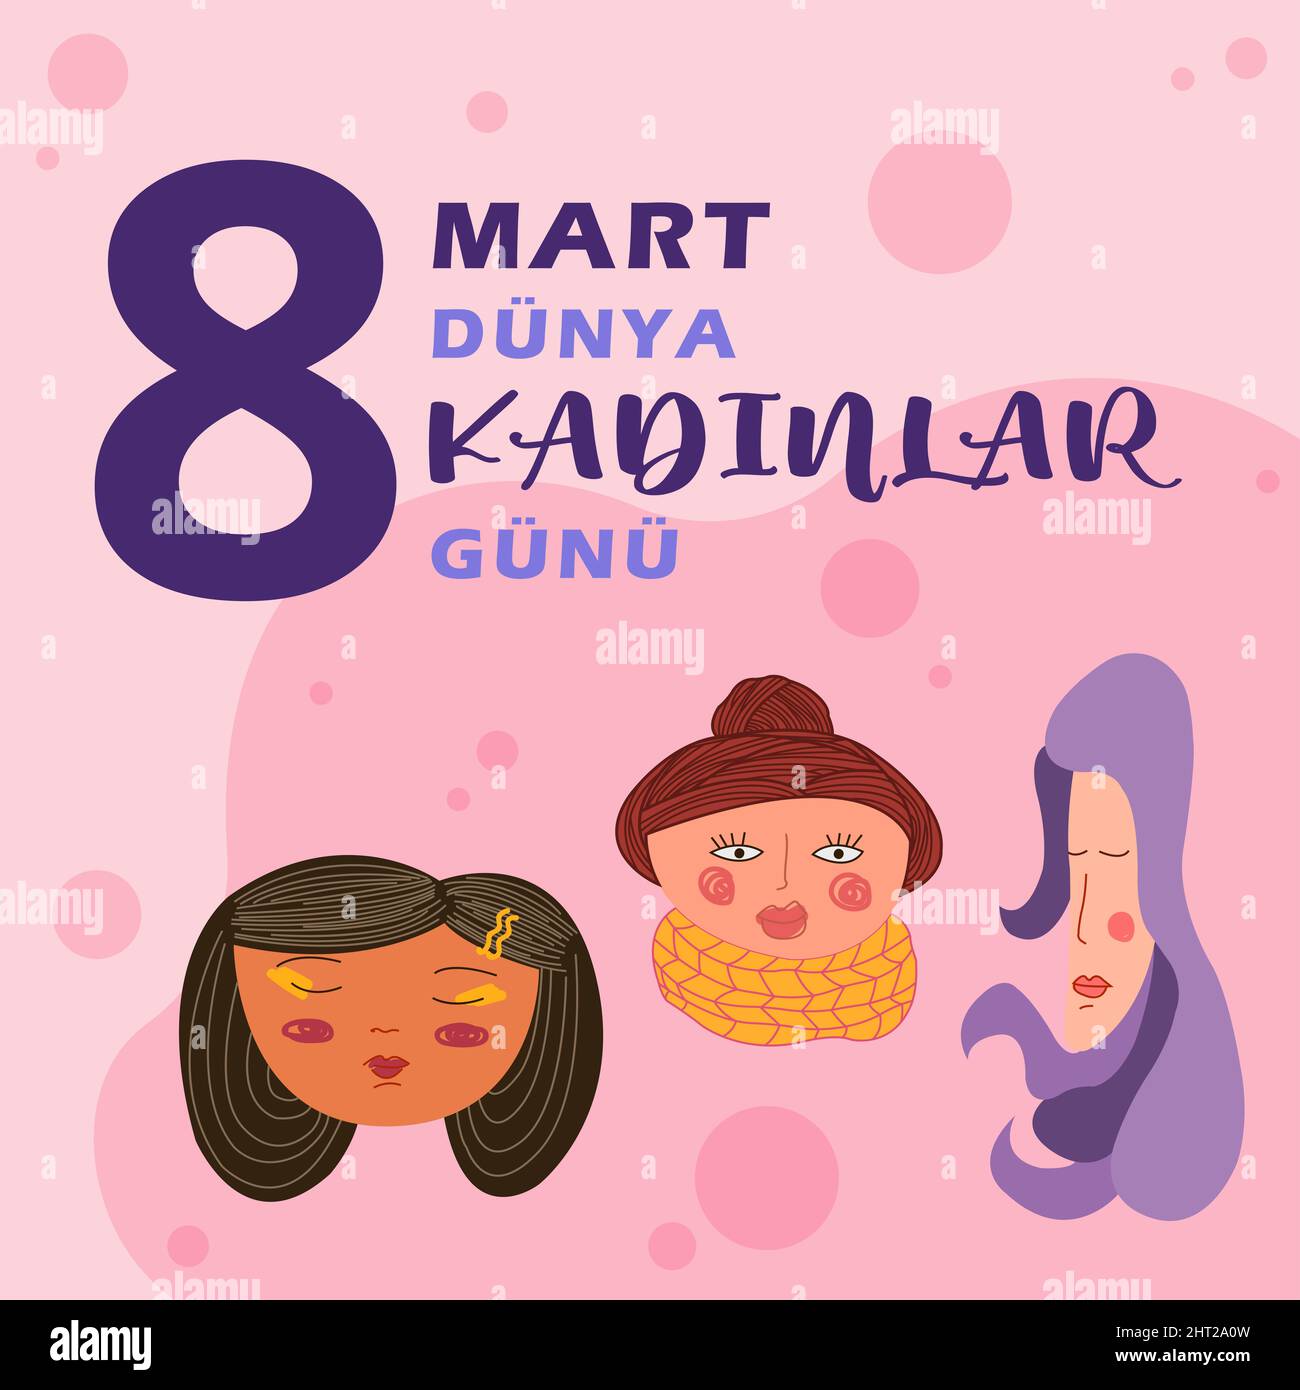 8th marzo Giornata Internazionale della Donna Traduci: 8 Mart Dunya Kadinlar Gunu. Il concetto del movimento di empowerment femminile. Illustrazione in stile piatto Foto Stock